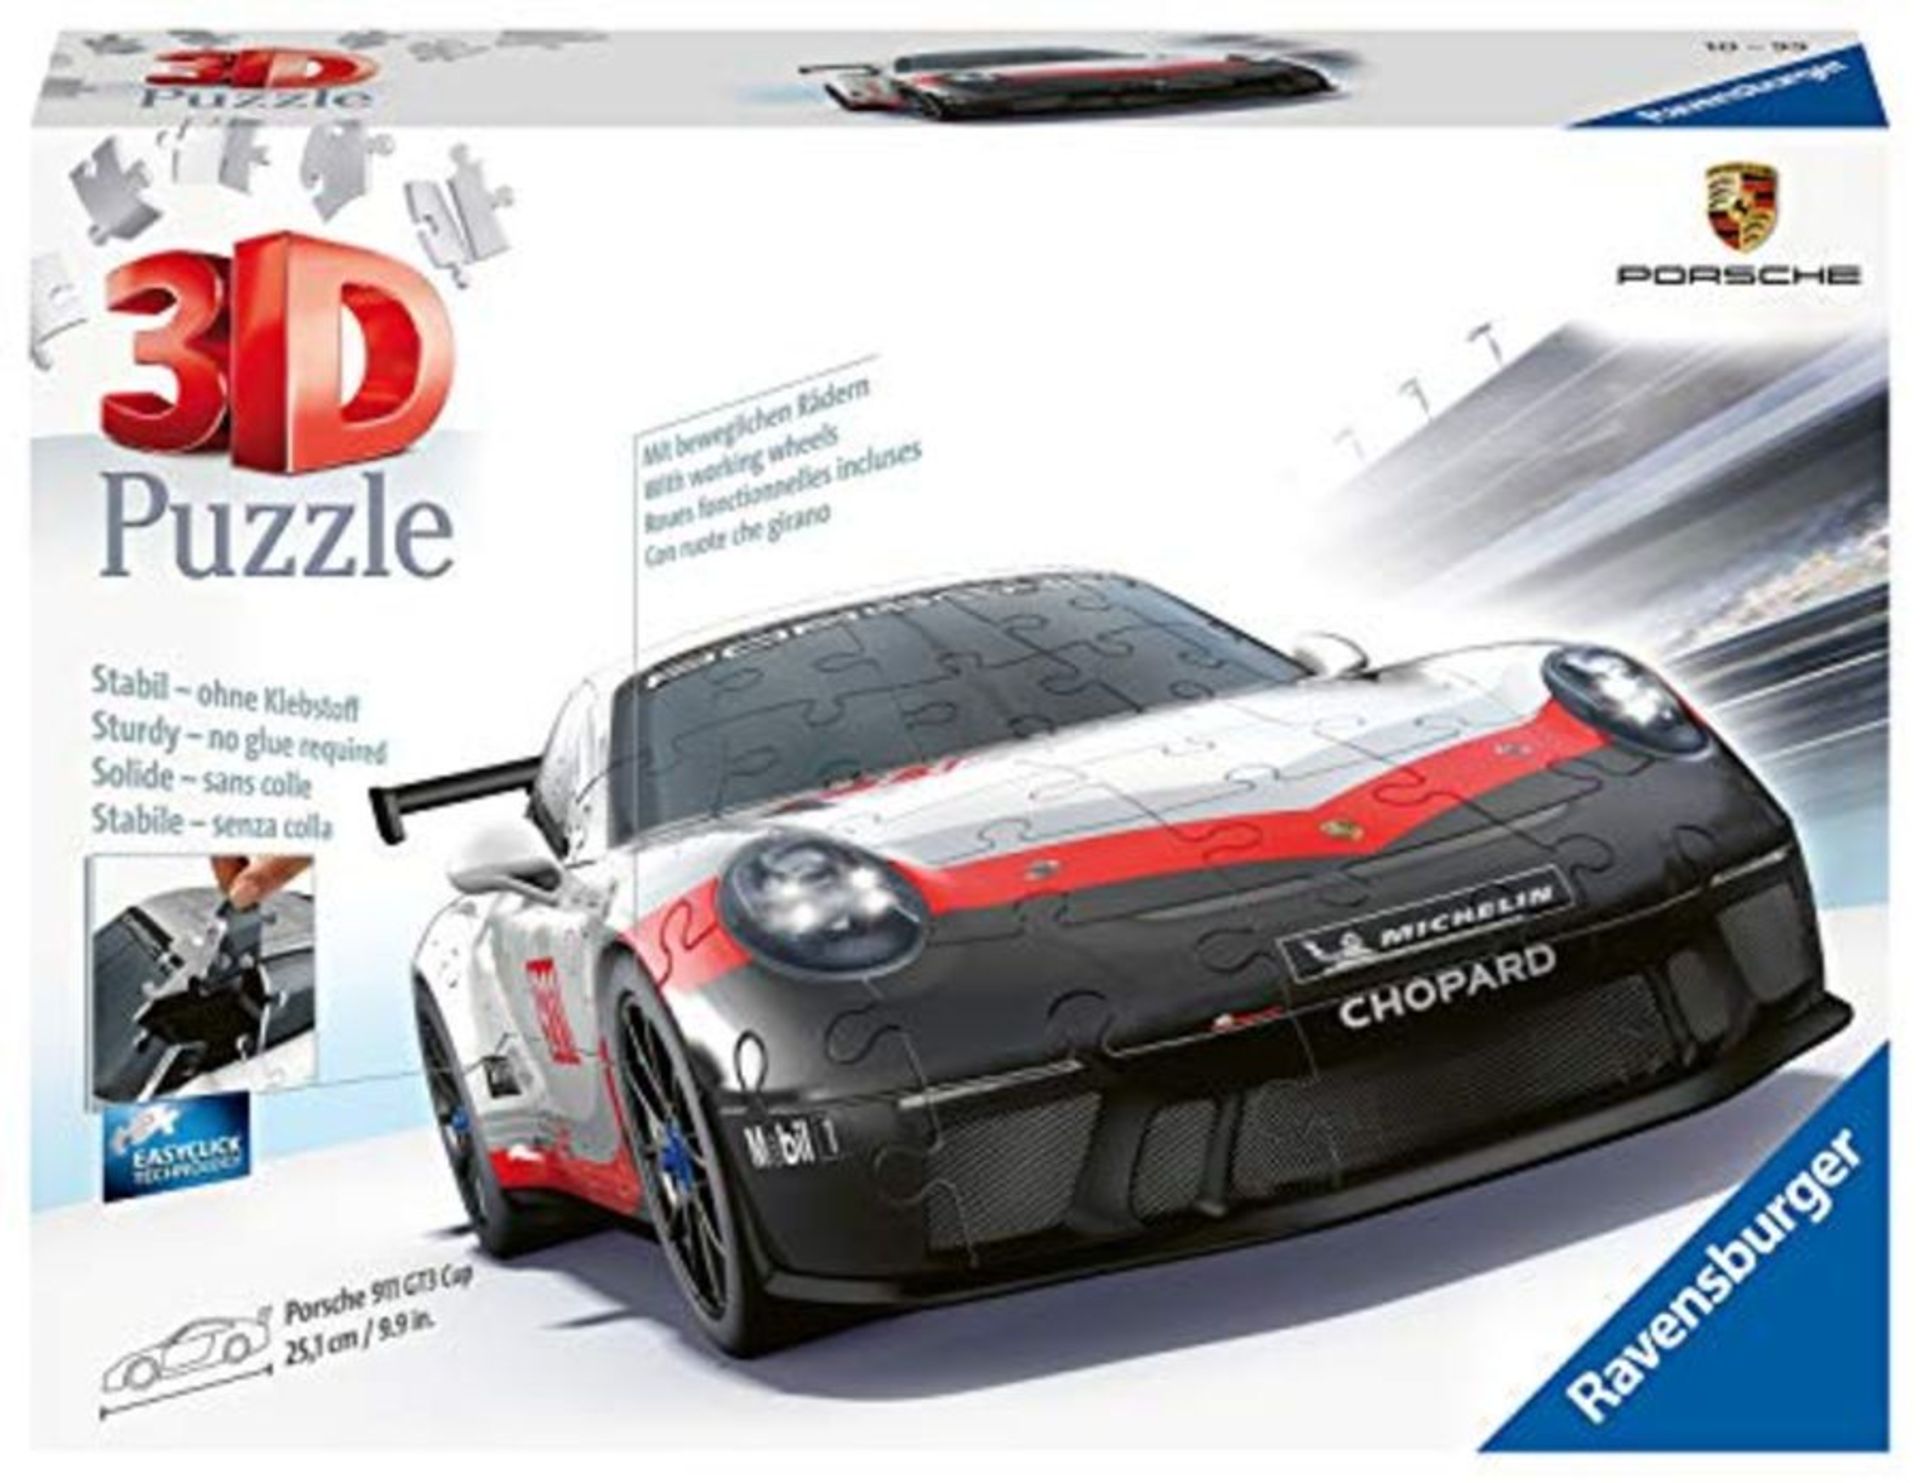 R�a�v�e�n�s�b�u�r�g�e�r� �P�o�r�s�c�h�e� �G�T�3� �C�u�p� �3�D� �J�i�g�s�a�w� �P�u�z�z�l�e� �f�o�r� �